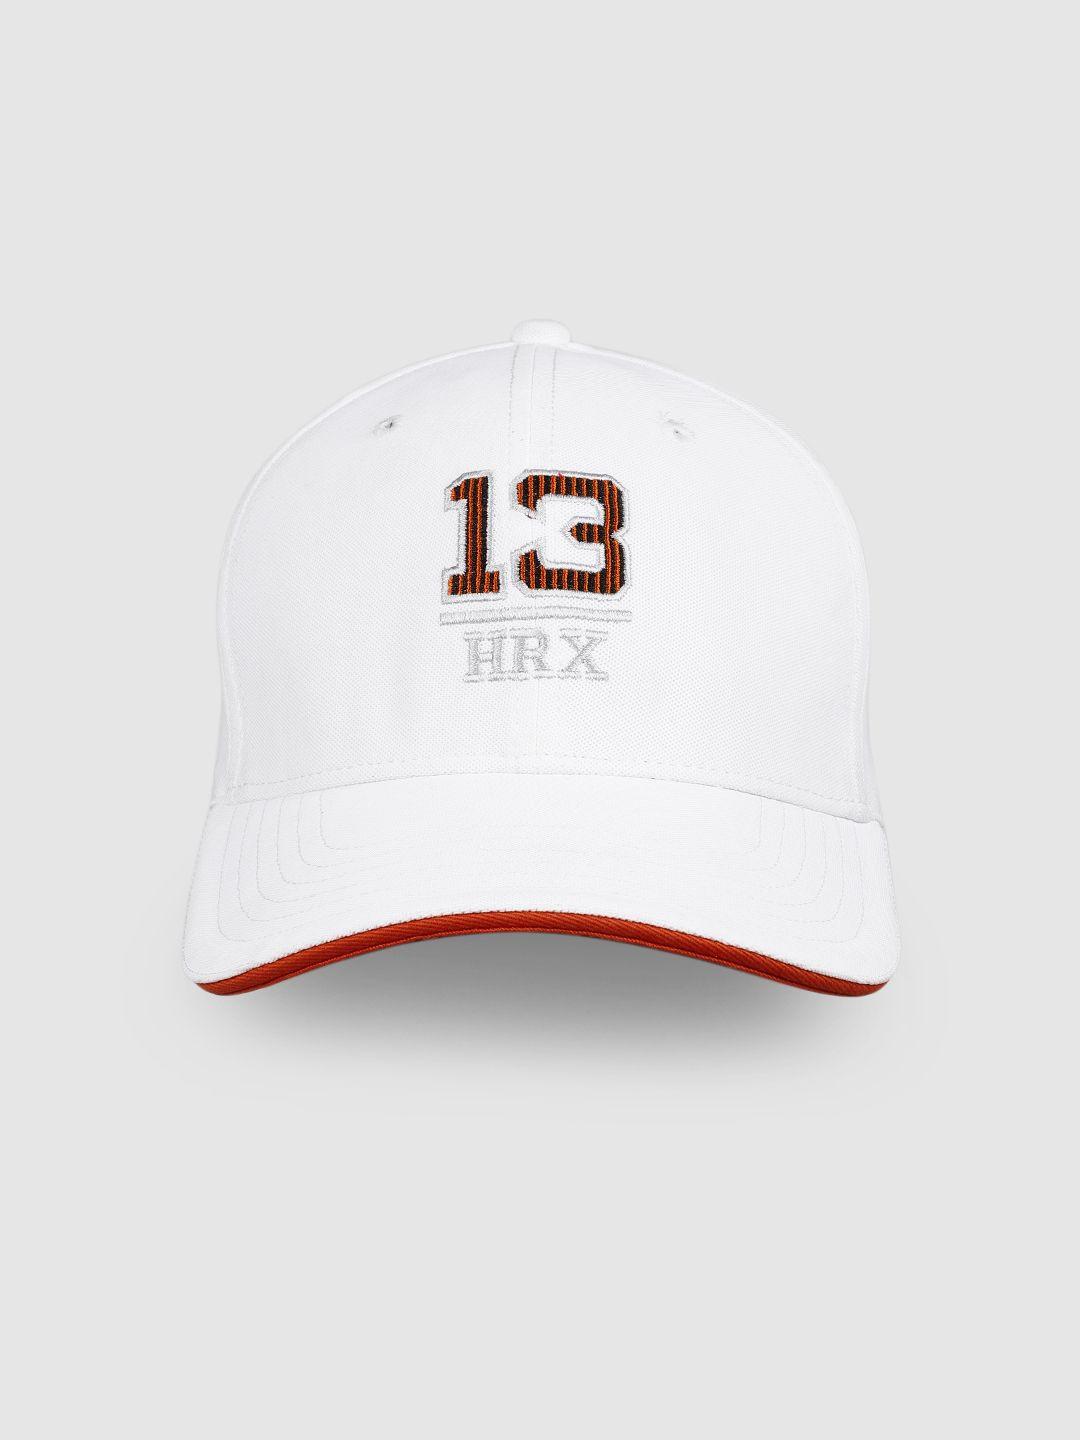 hrx-by-hrithik-roshan-unisex-white-embroidered-baseball-cap